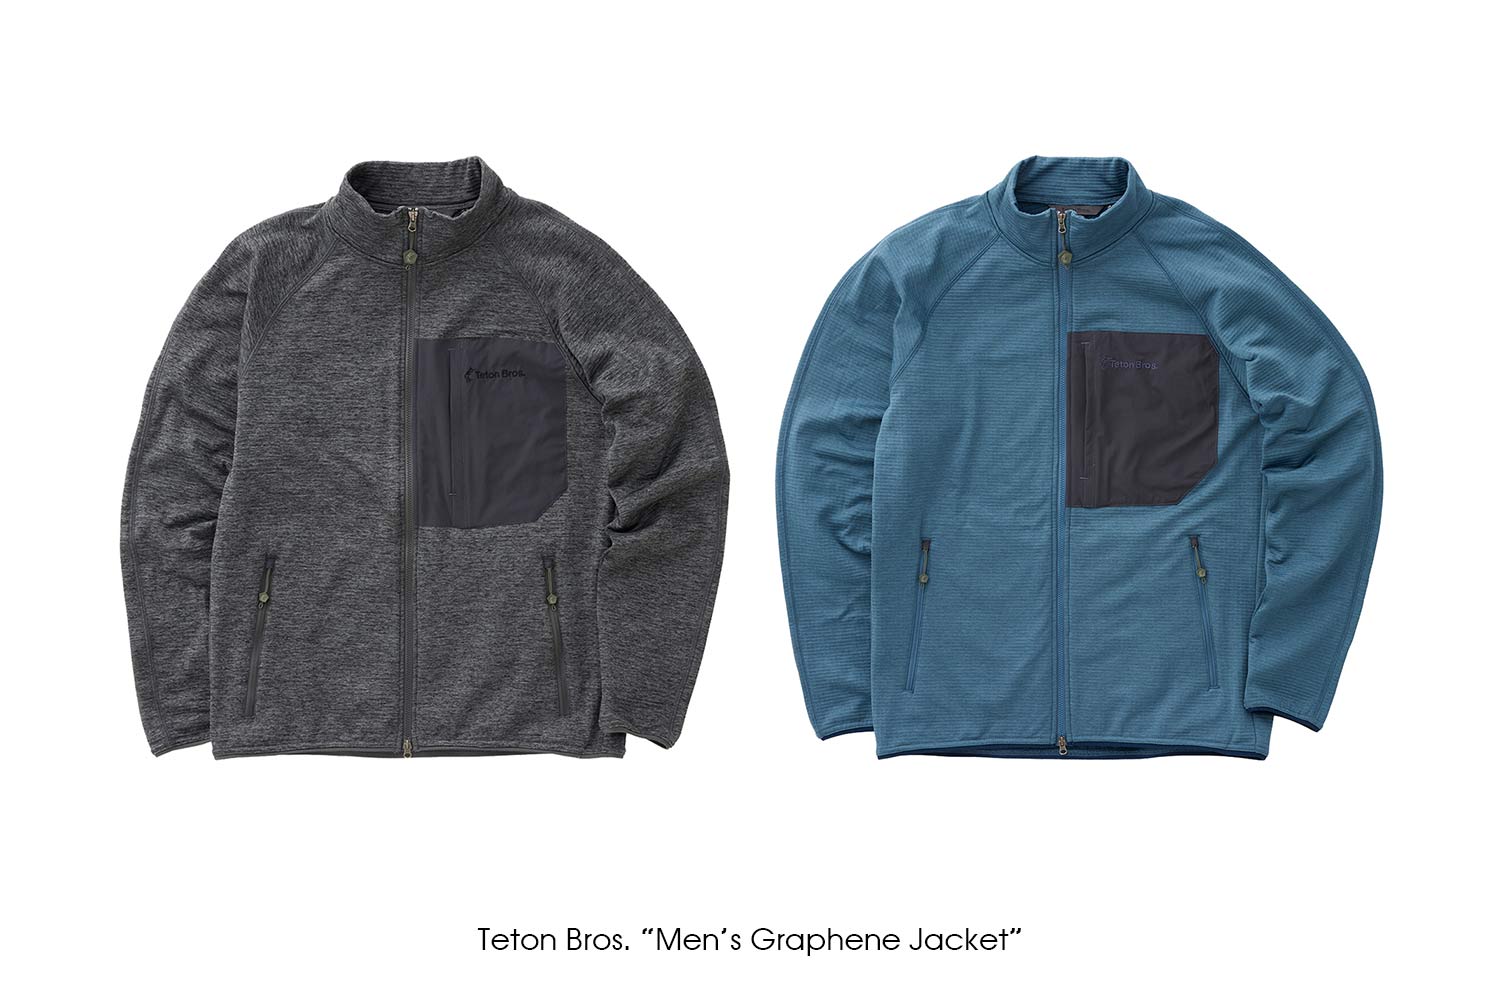 Teton Bros. "Men's Graphene Jacket"